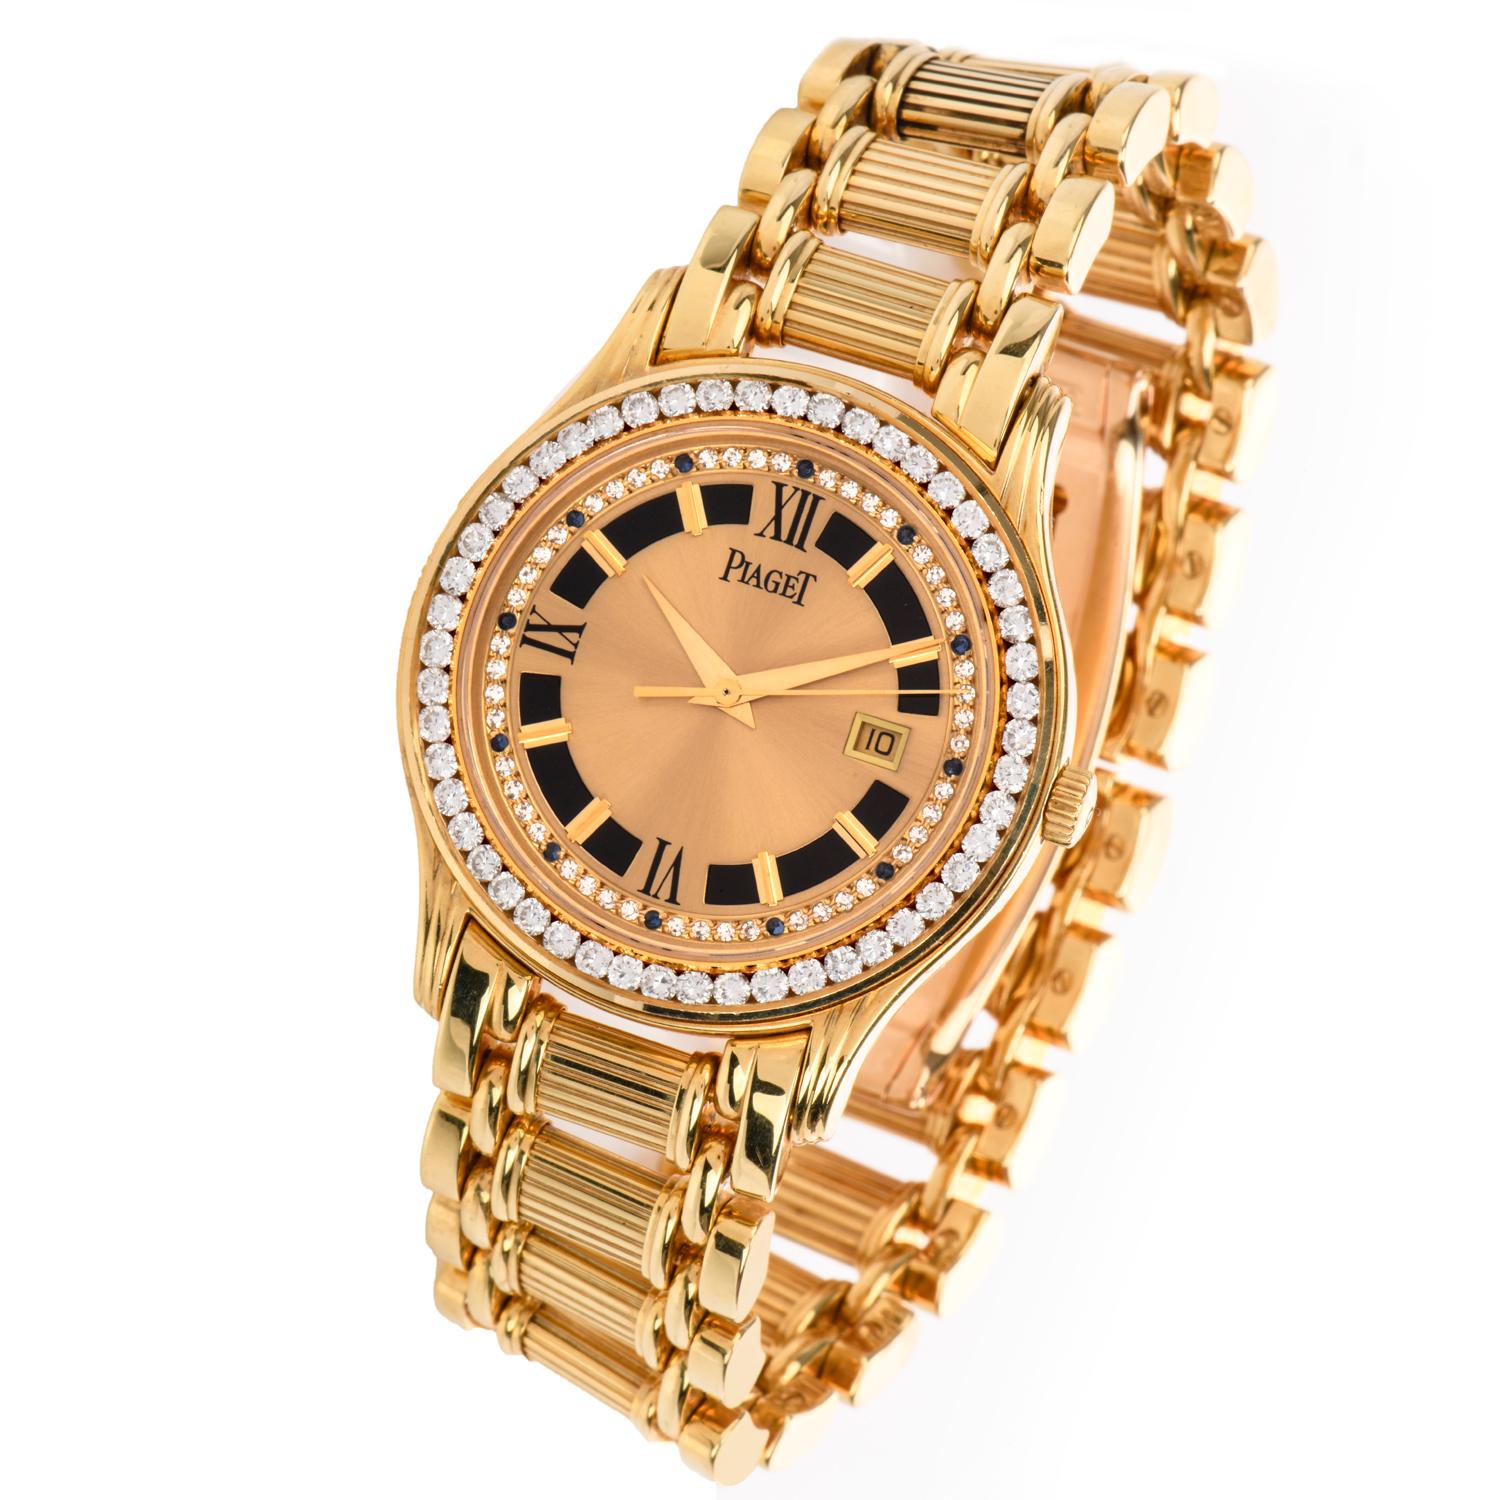 Women's or Men's Piaget Polo 24005 M 503 D Diamond Onyx 18 Karat Yellow Gold Watch